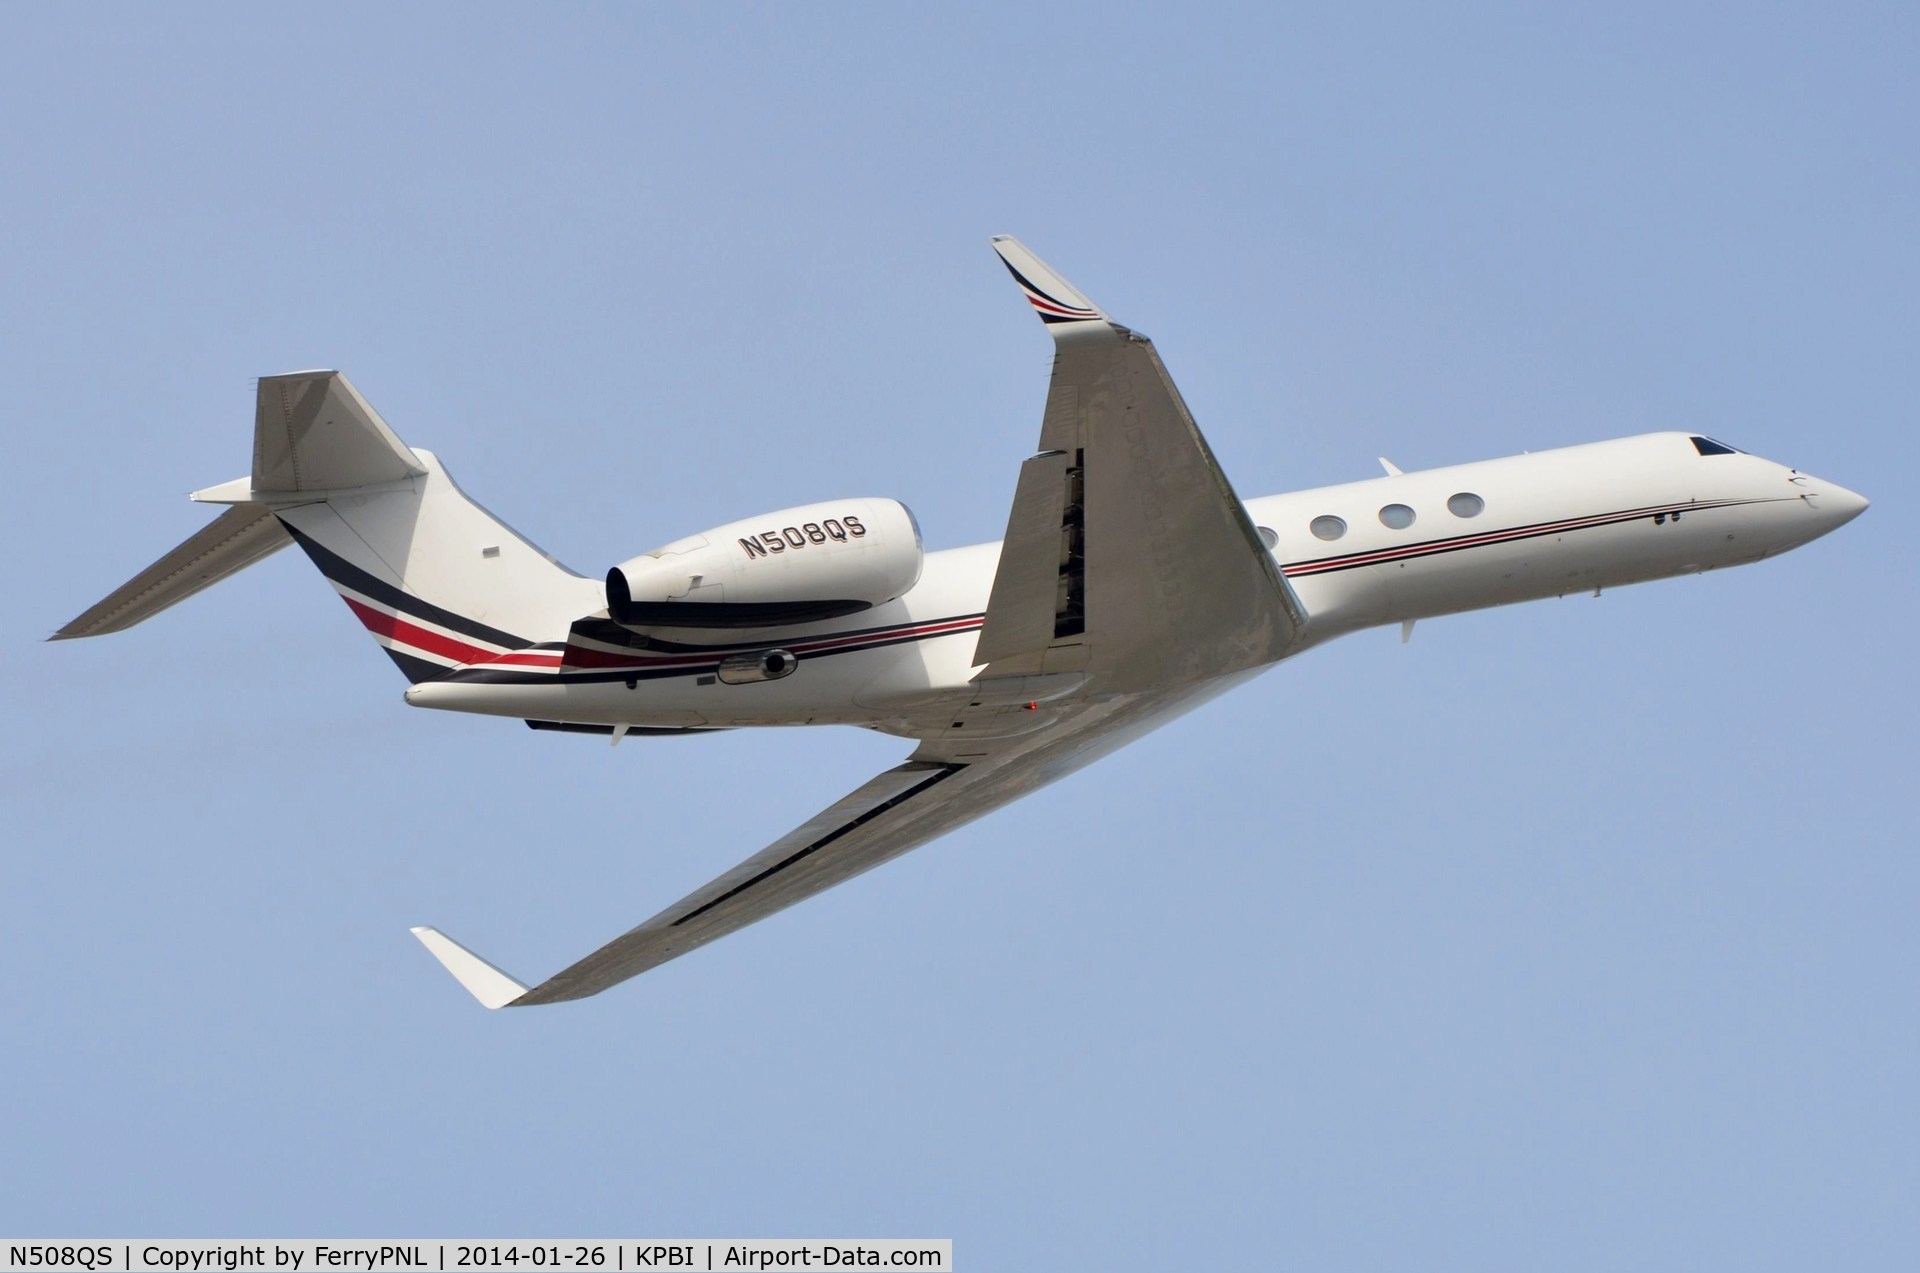 N508QS, 2001 Gulfstream Aerospace G-V C/N 631, Netjets G5 taking-off.